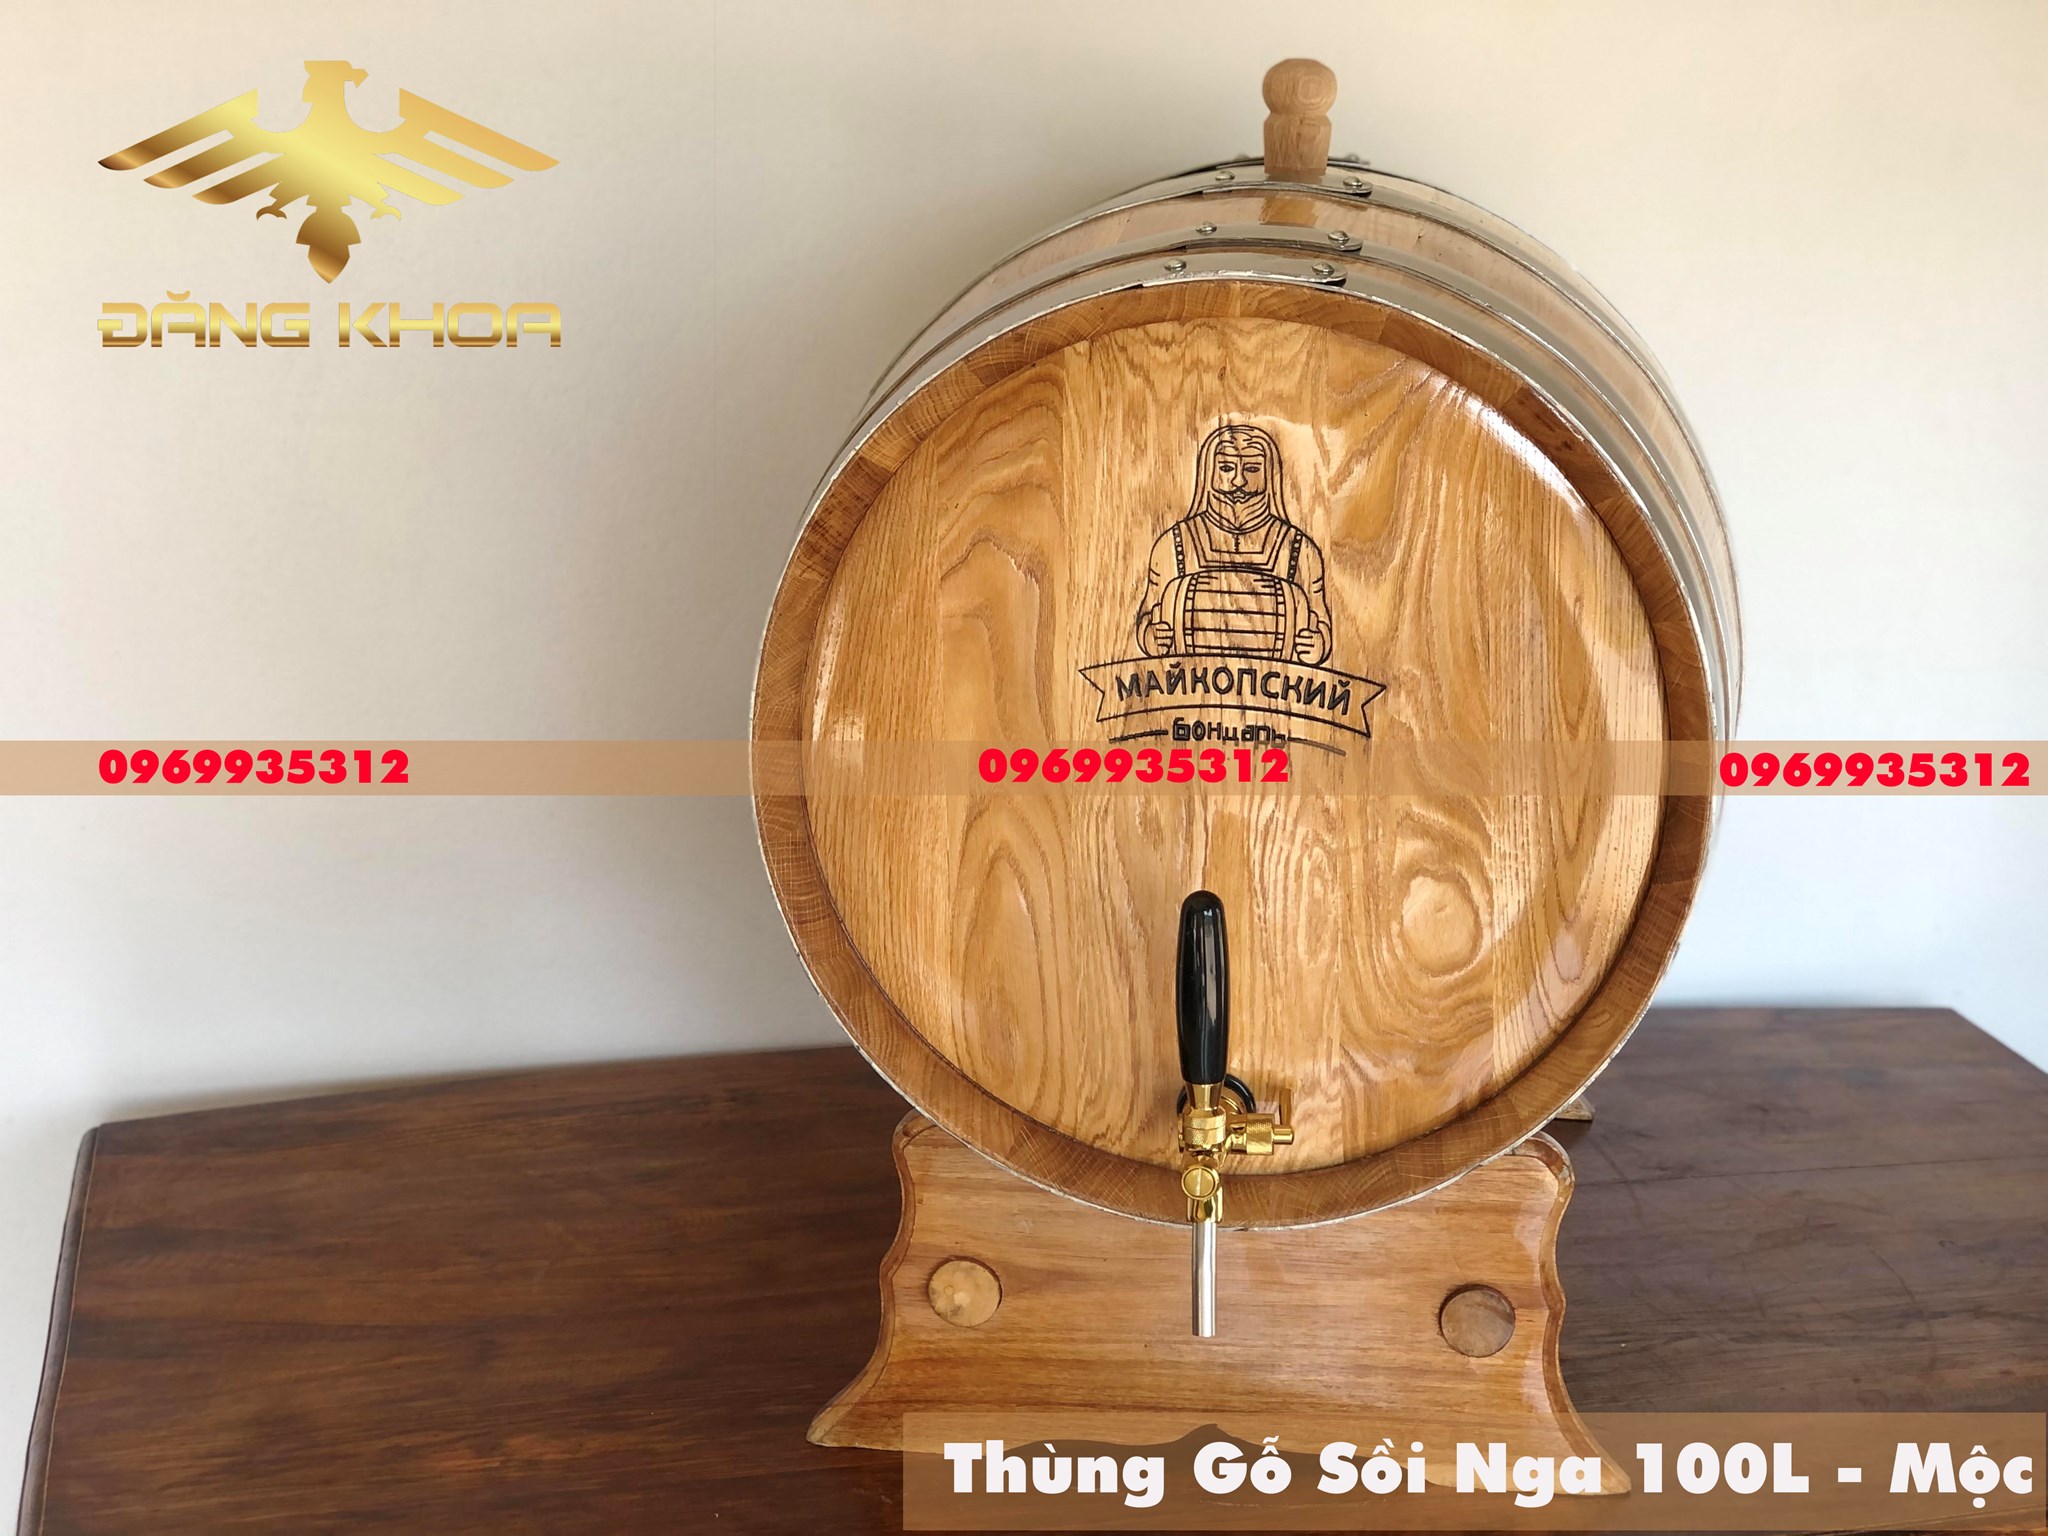 Bước 3: Tiến hành ủ rượu vào thùng gỗ sồi